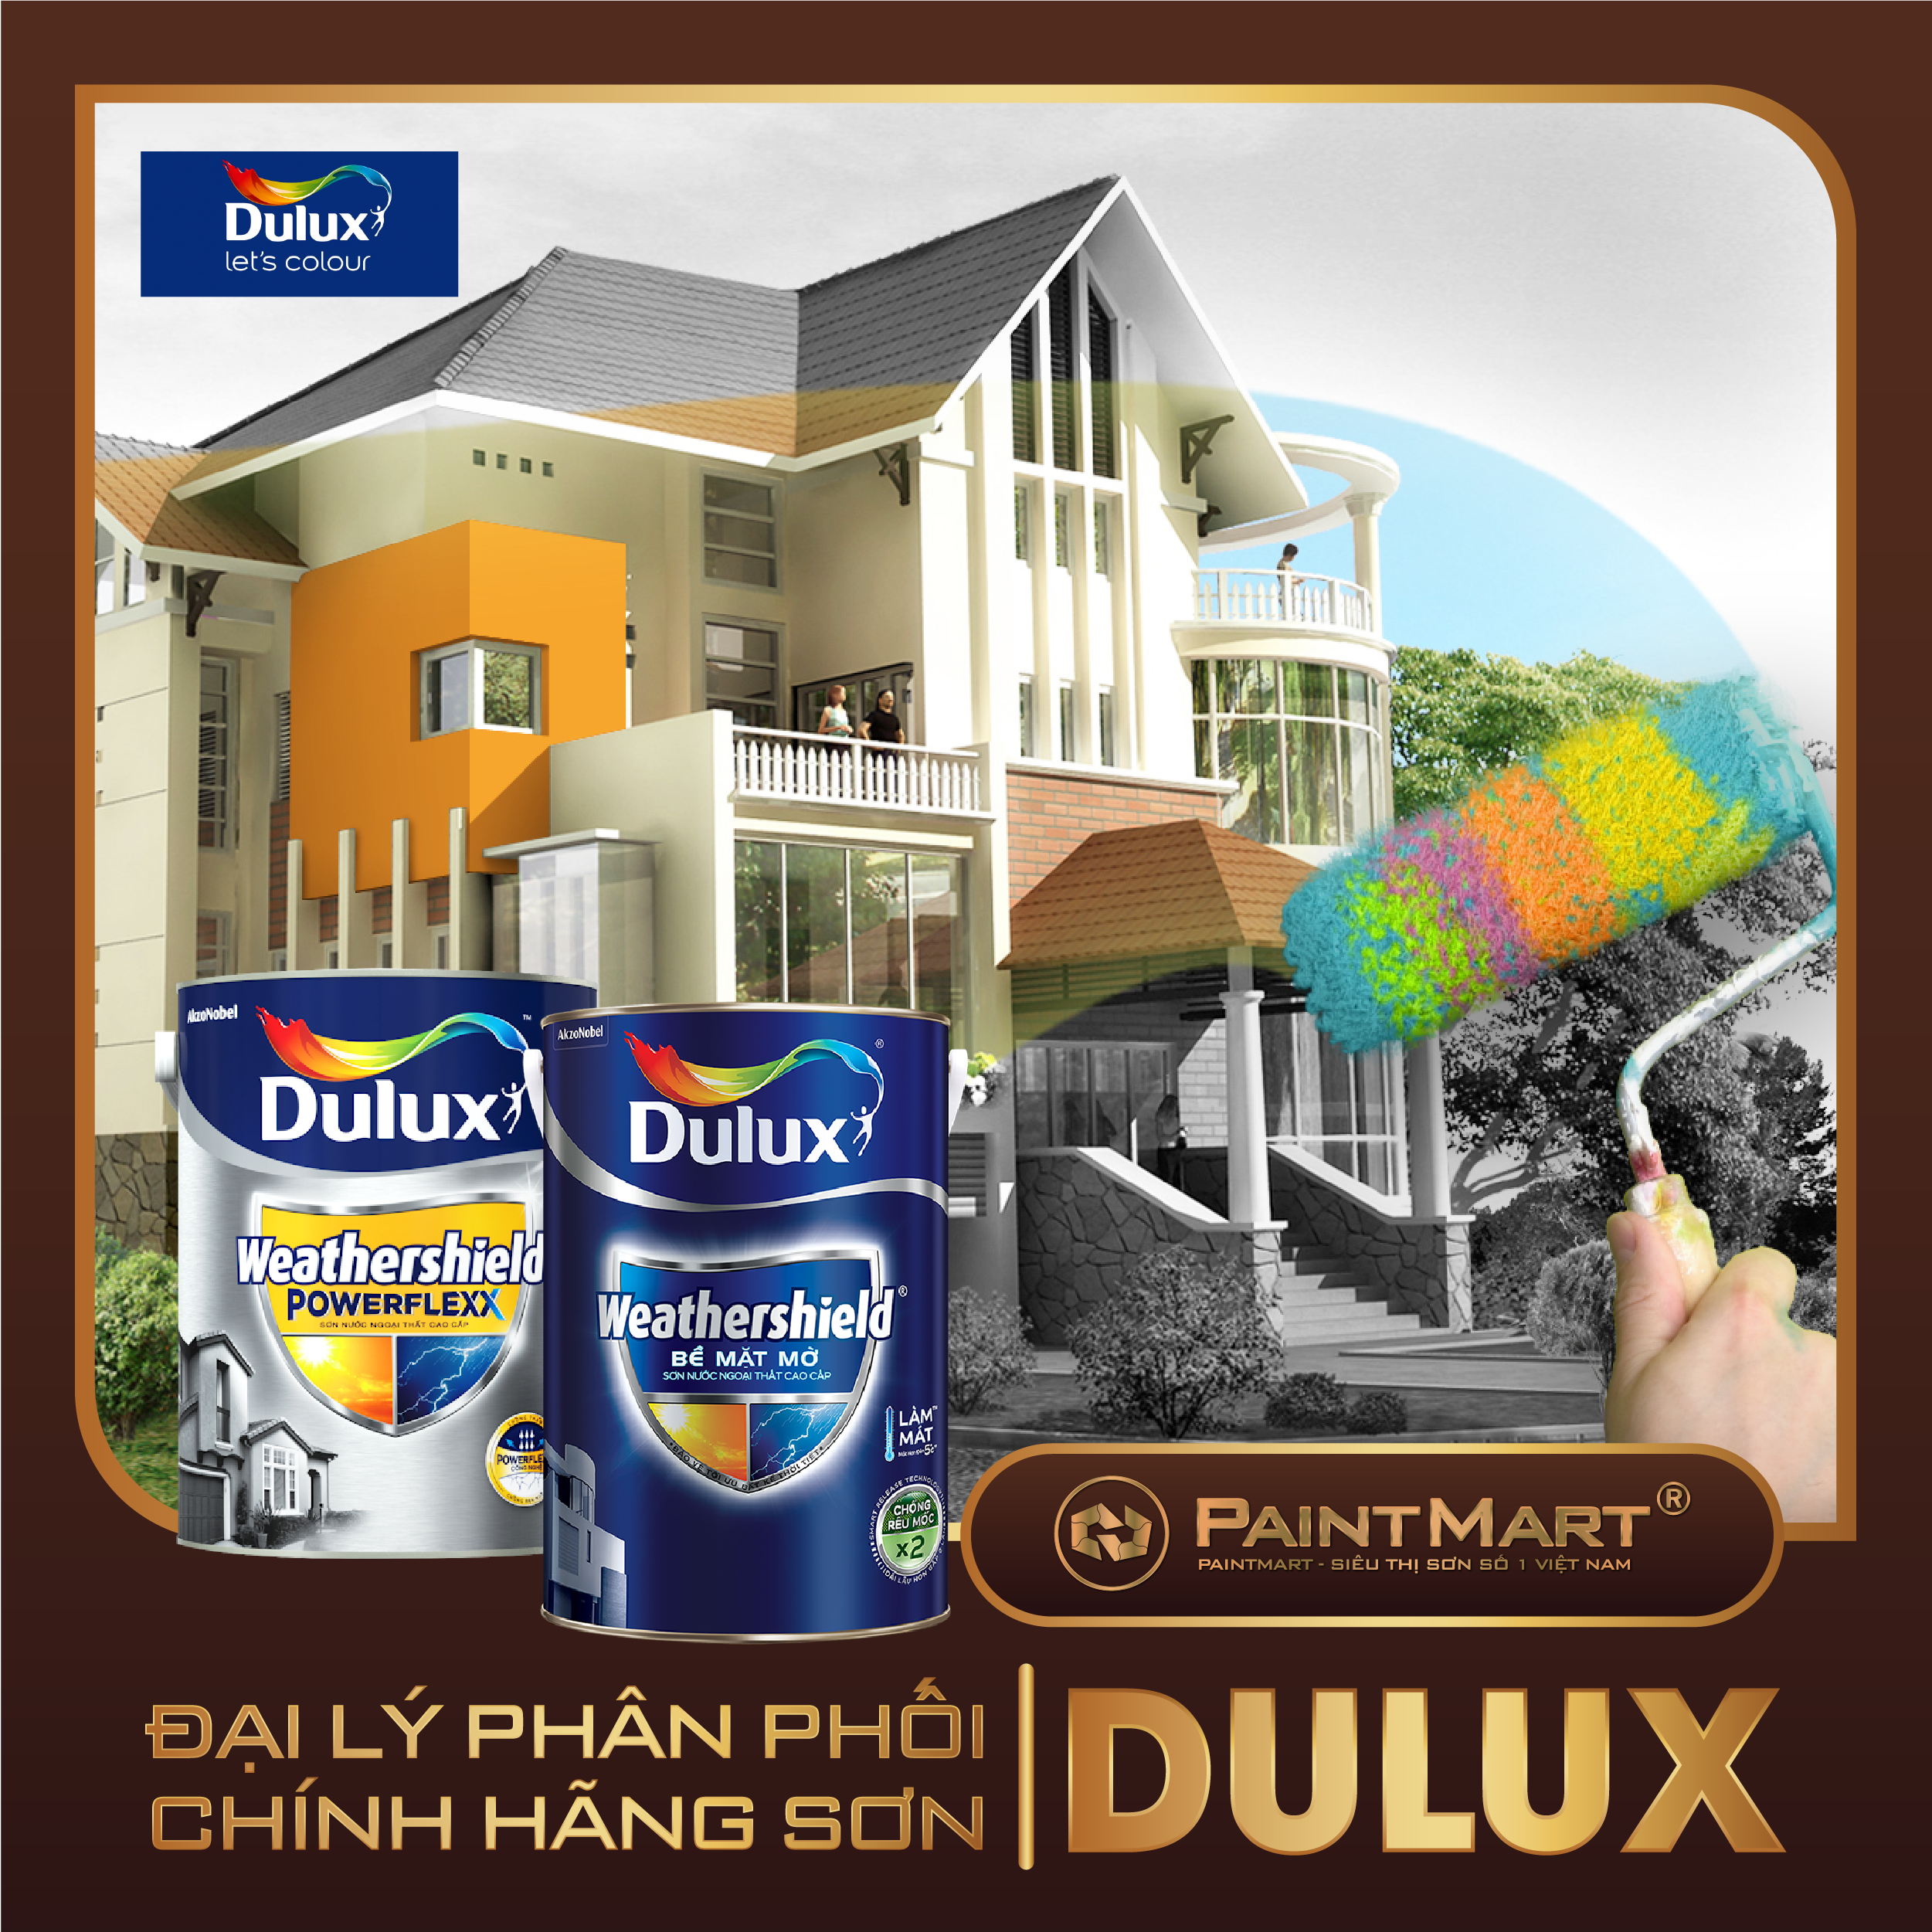 Dulux Weathershield:
Sơn Dulux Weathershield bảo vệ nhà bạn khỏi mưa, nắng và sương mù với công thức chống thấm nước, chống bong tróc và chống tia UV. Hãy xem hình ảnh để thấy hiệu quả của nó trên các ngôi nhà.